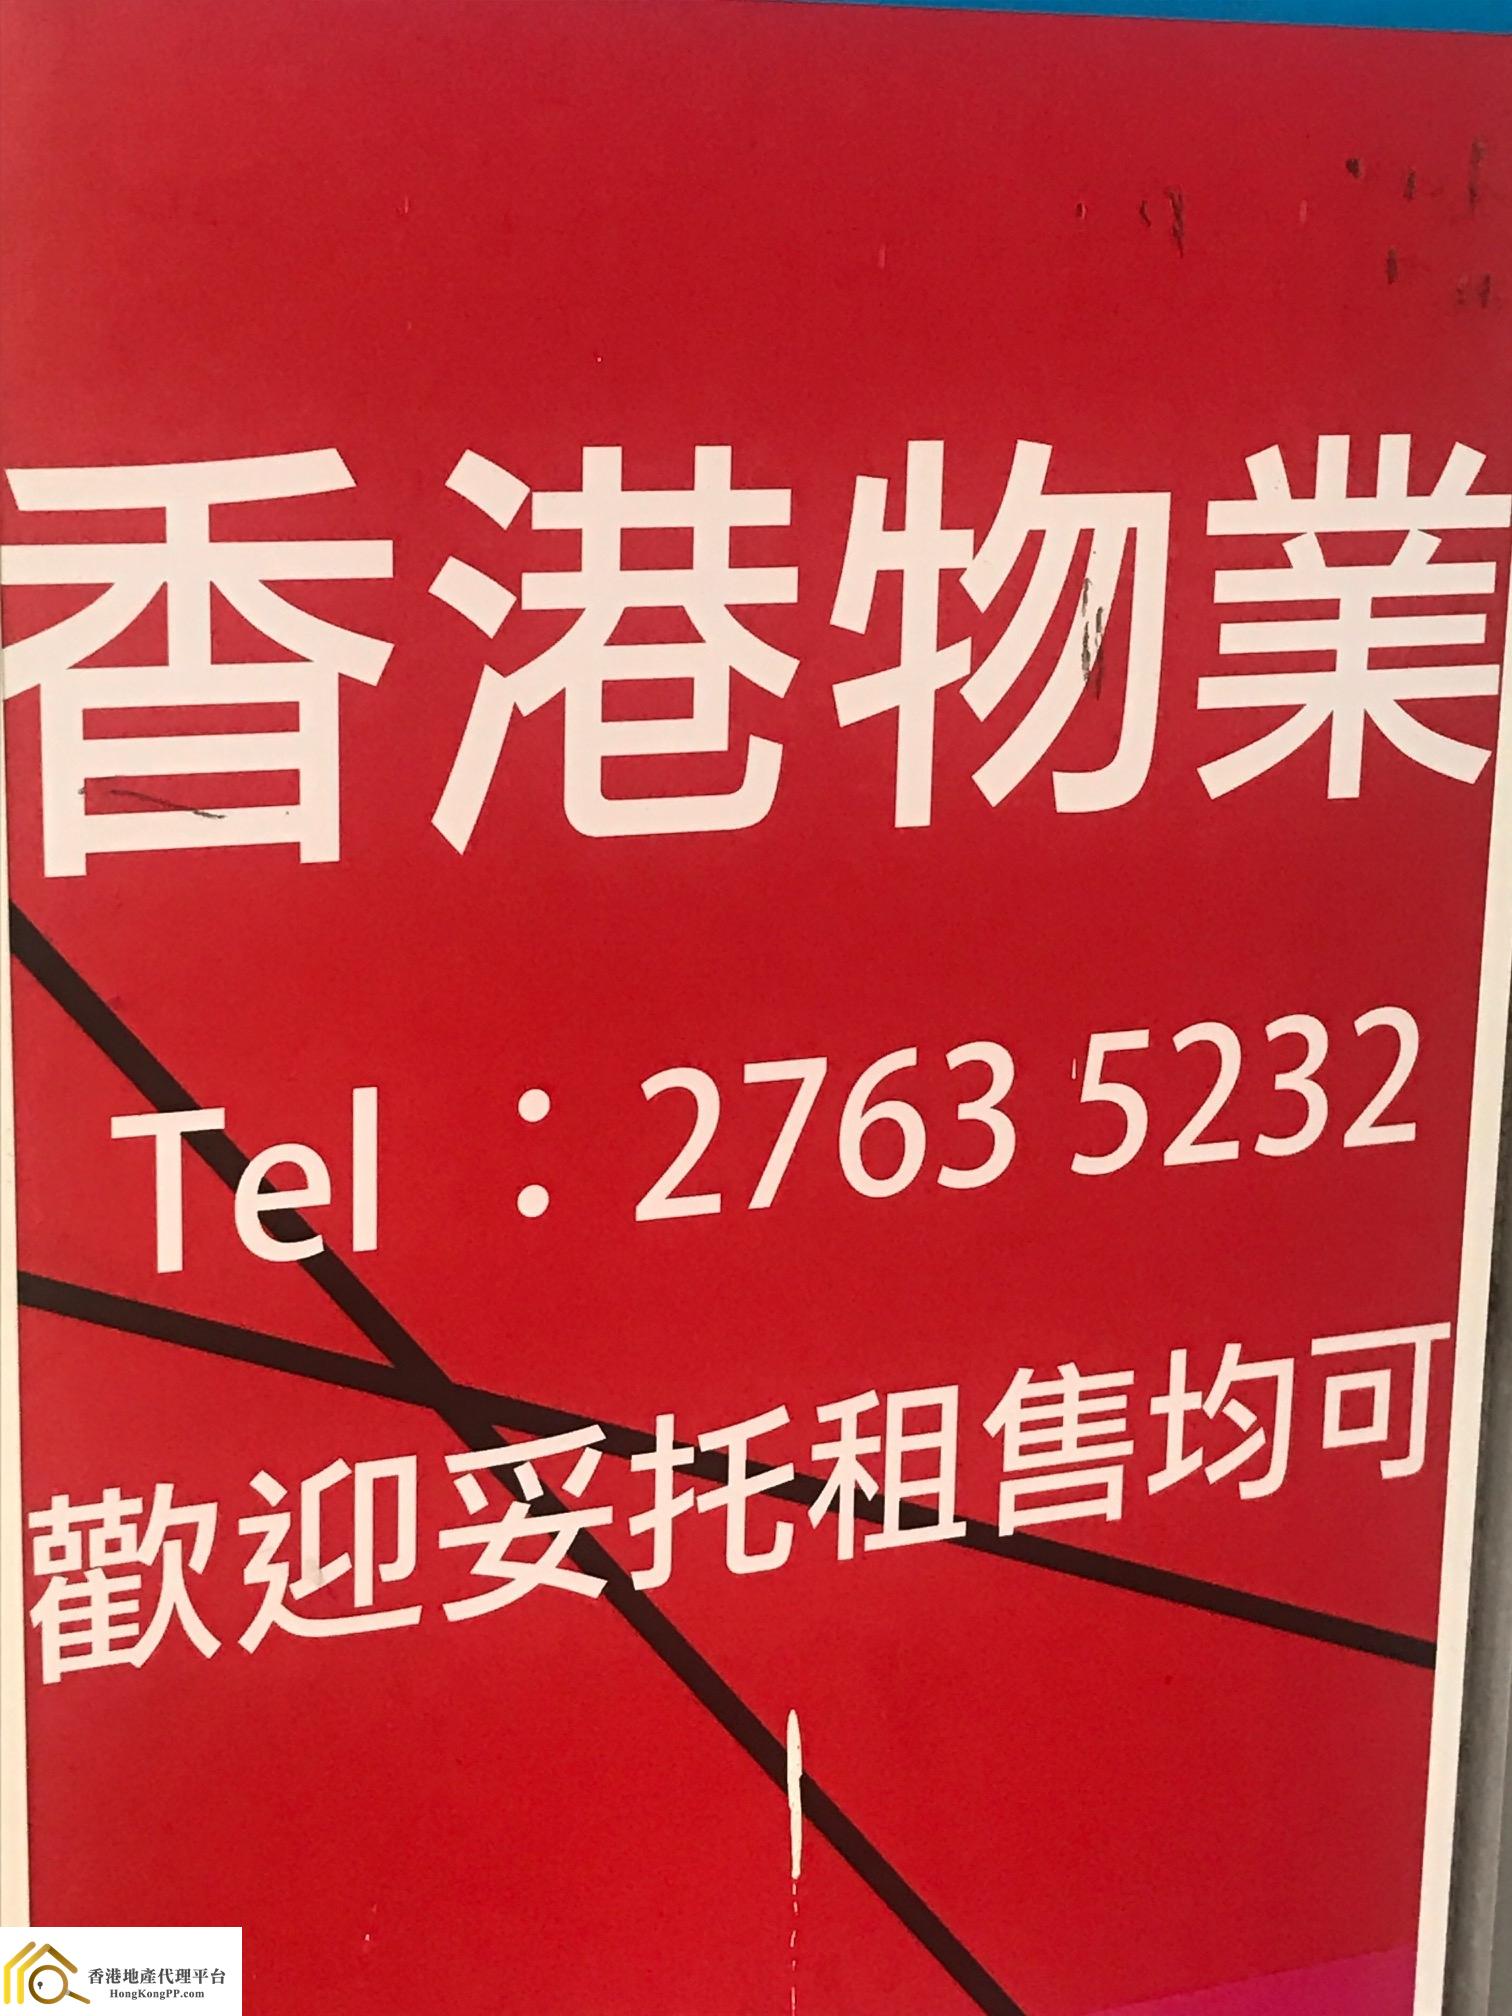 住宅地產代理: 香港物業代理